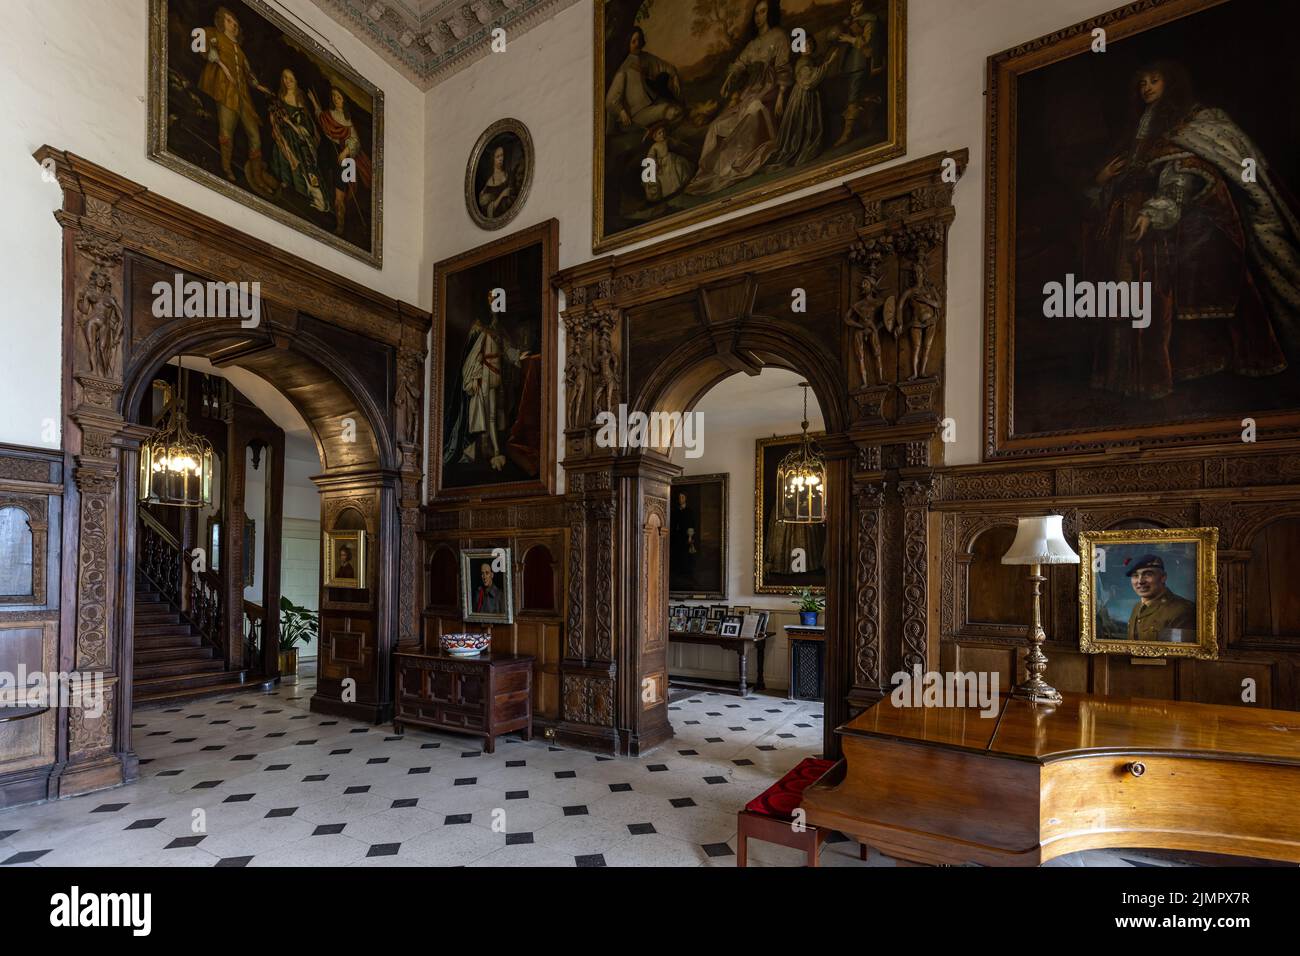 Grande salle à Burton Agnes Hall, superbe manoir élisabéthain du 17th siècle dans l'East Riding of Yorkshire, Angleterre, Royaume-Uni Banque D'Images